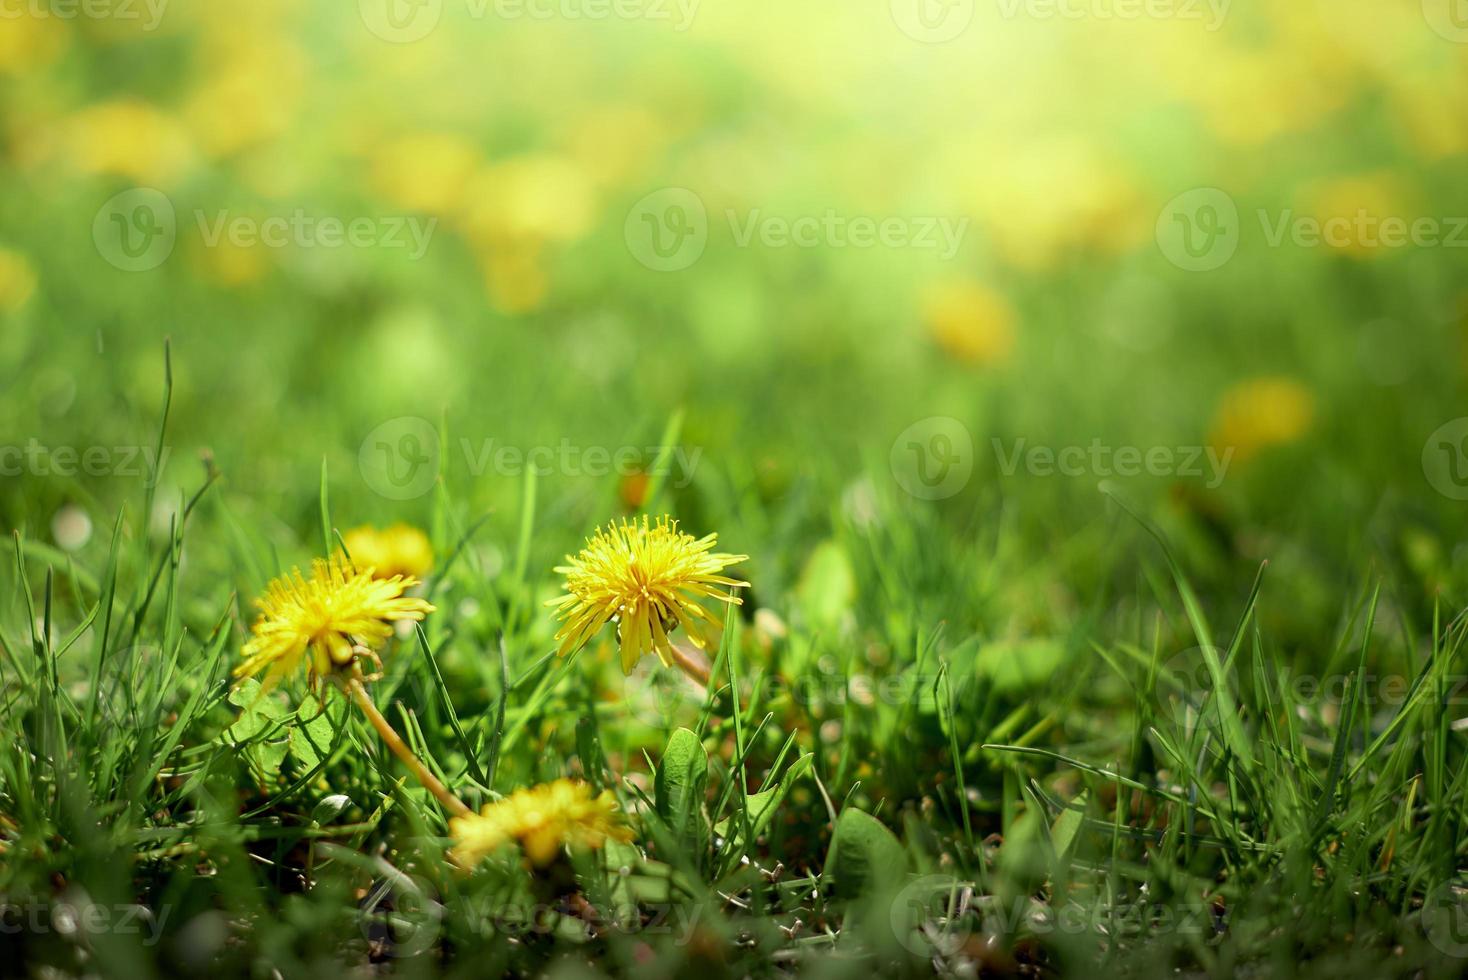 prairie avec des pissenlits jaunes. pissenlits jaunes contre champ jaune-vert dans le flou. photo